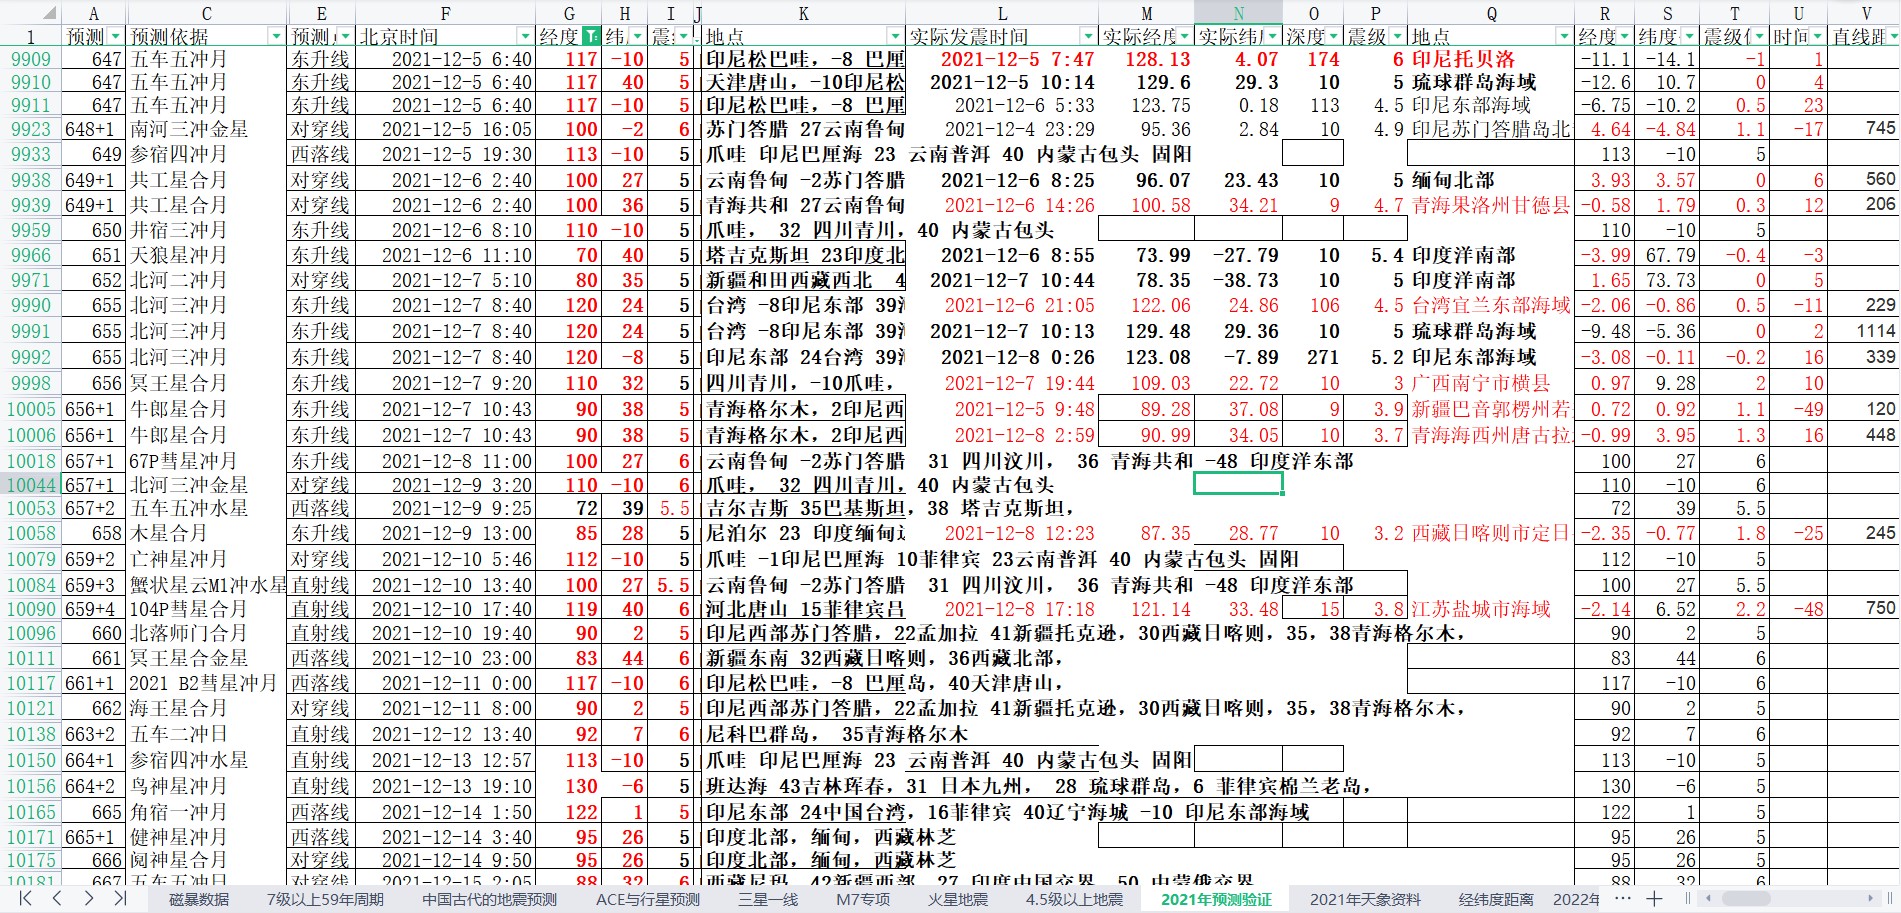 中国及周边区域地震预测验证2021年12月8-12月14日2.jpg